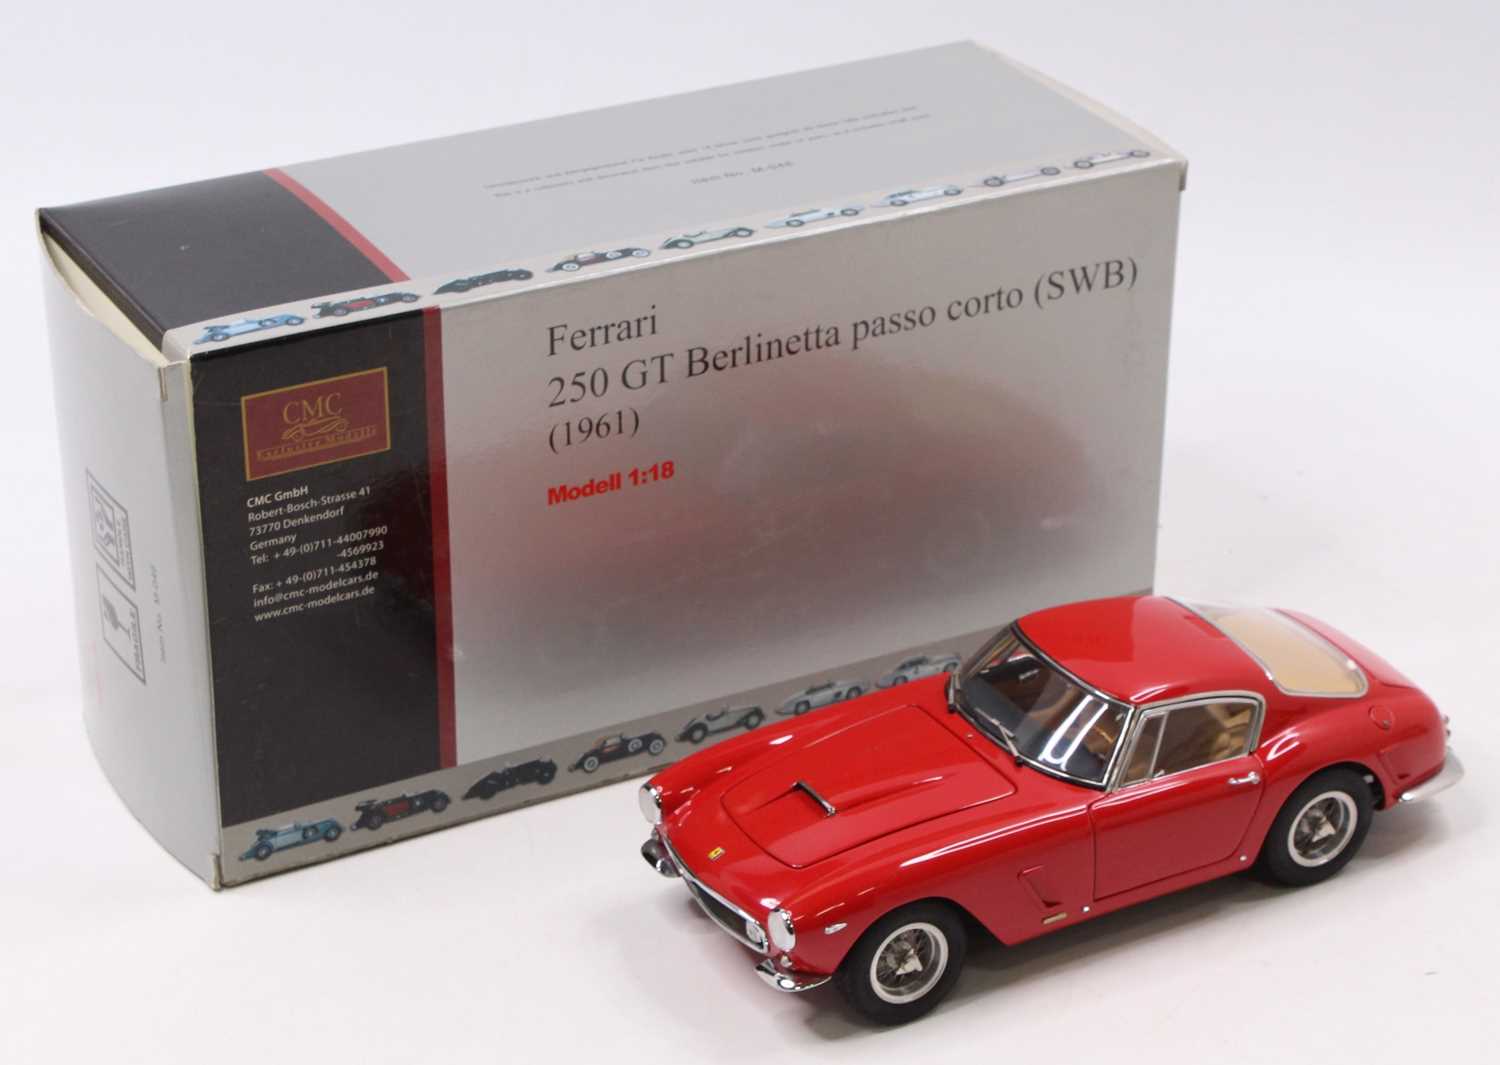 A CMC Exclusive Models No. M-46 1/18 scale model 1961 Ferrari 250 GT Berlinetta Passo Corto (SWB),